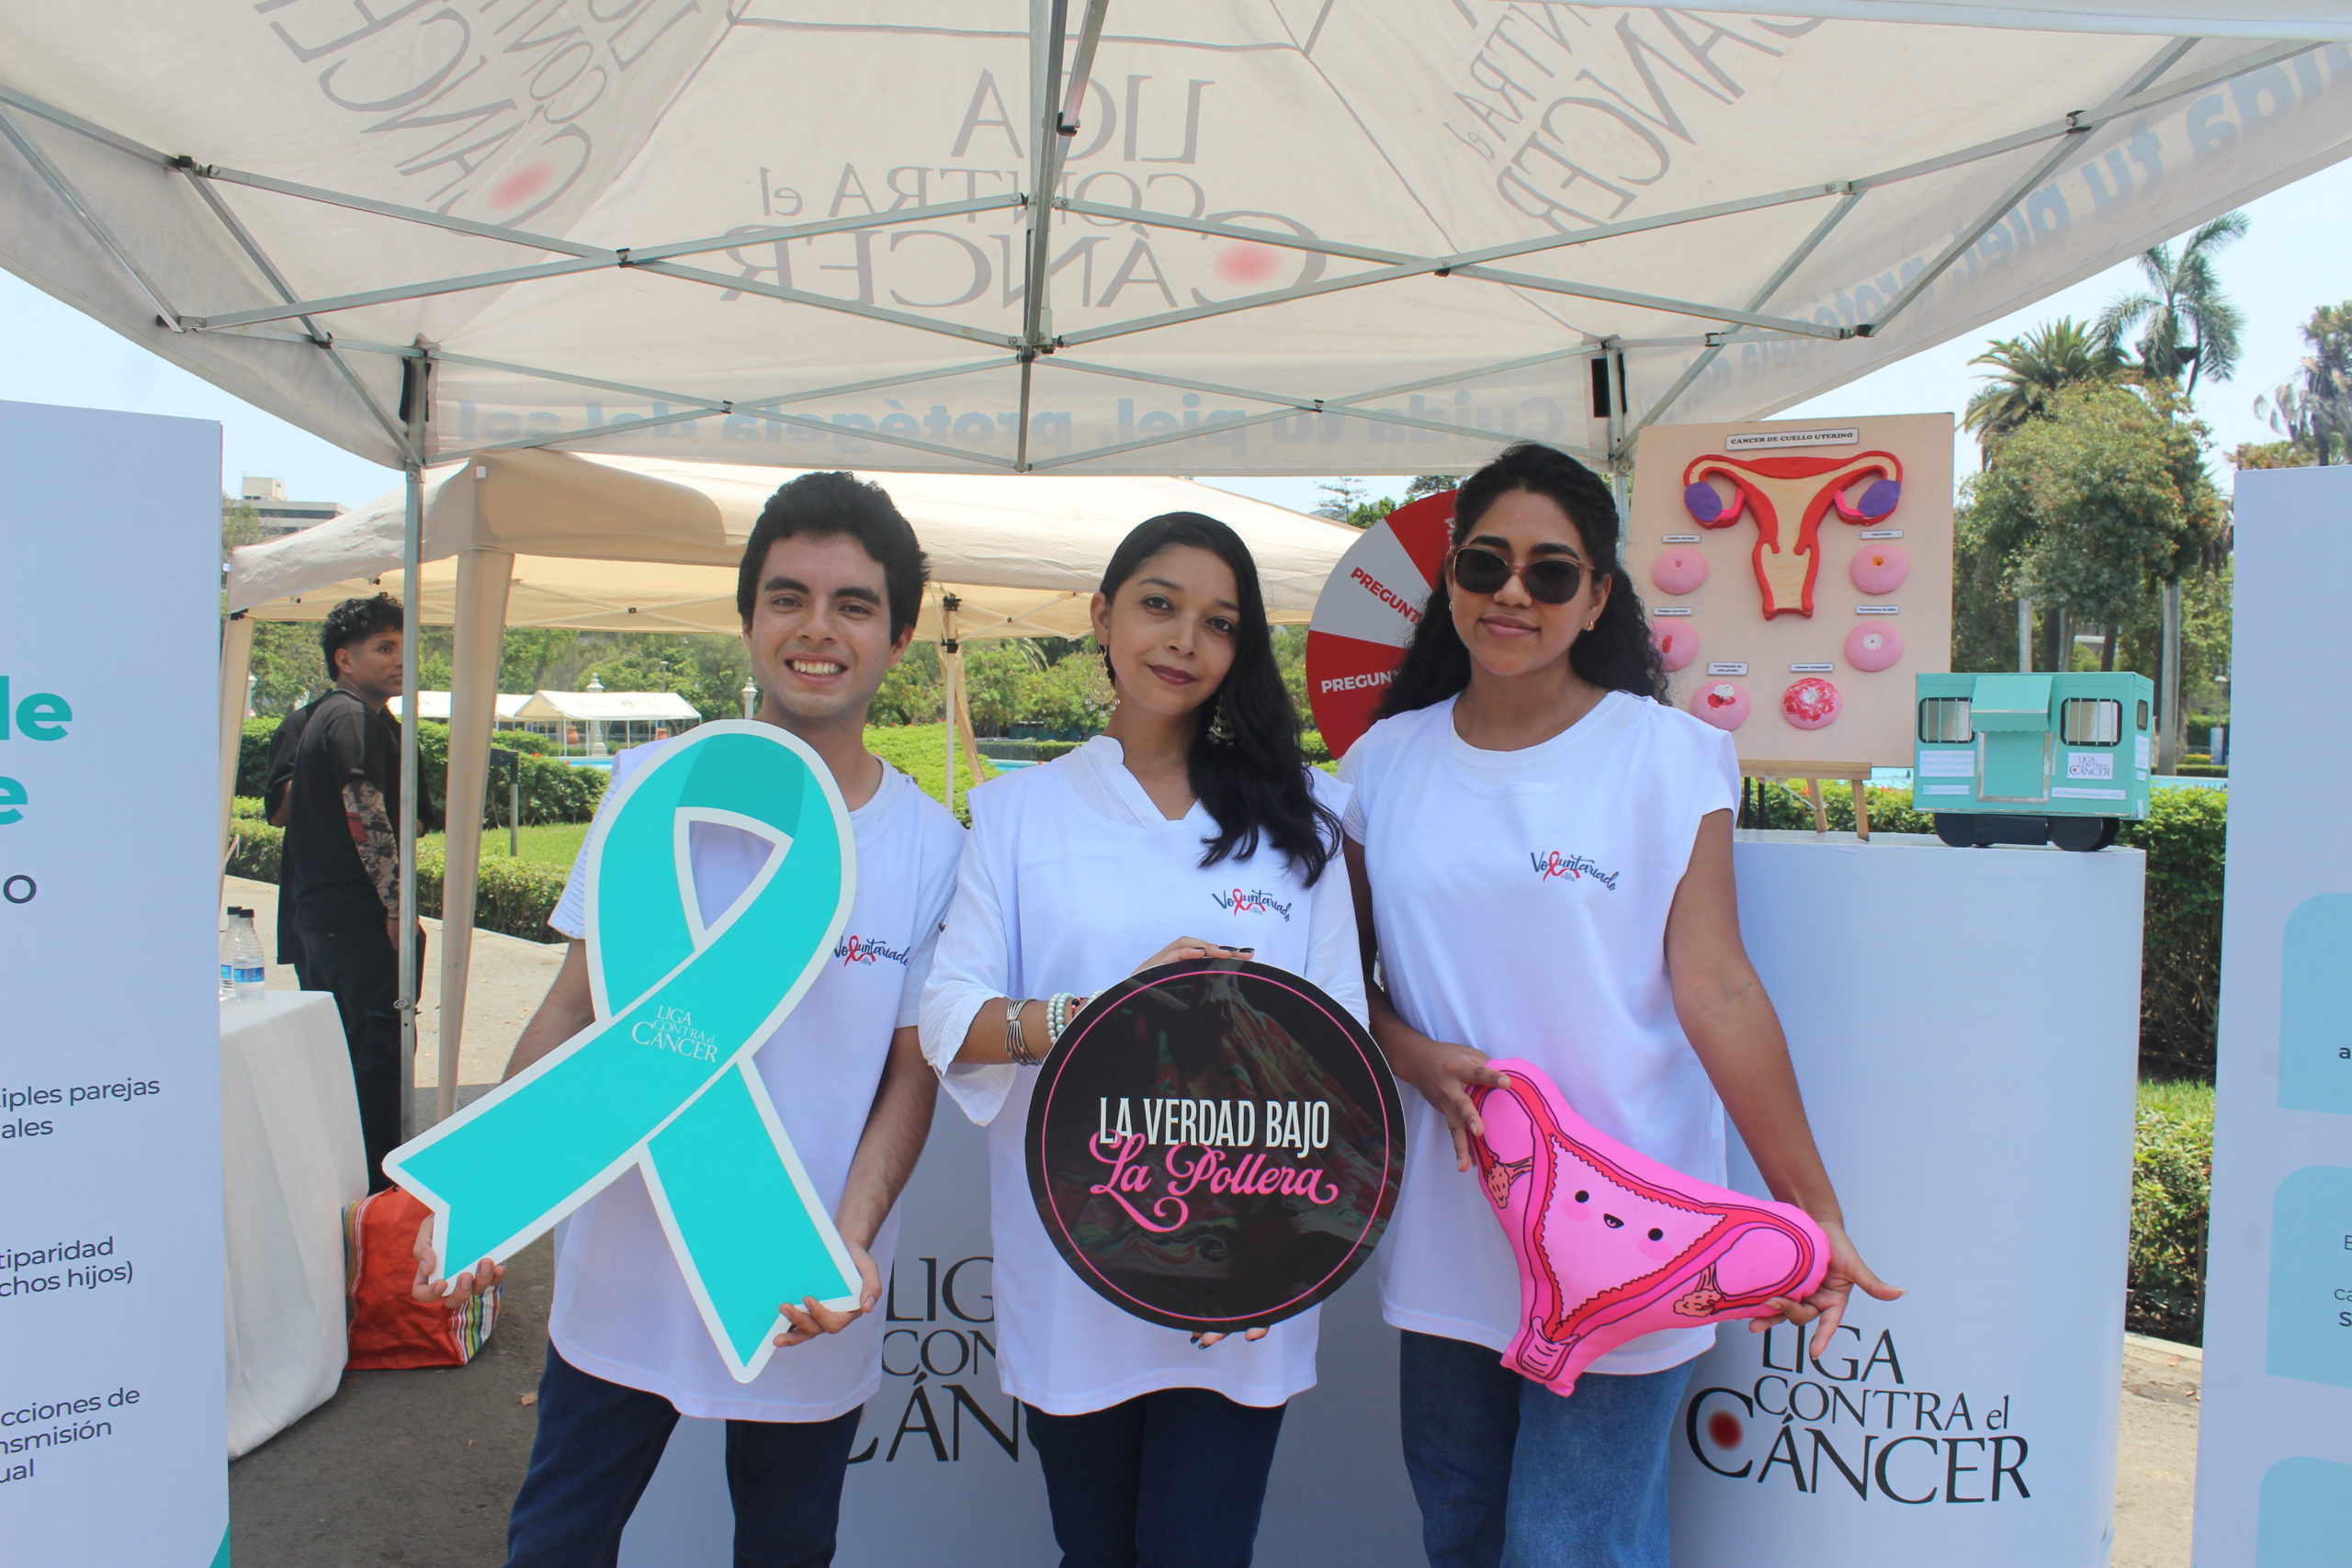 Lanzamiento de campaña para prevenir el cáncer de cuello uterino